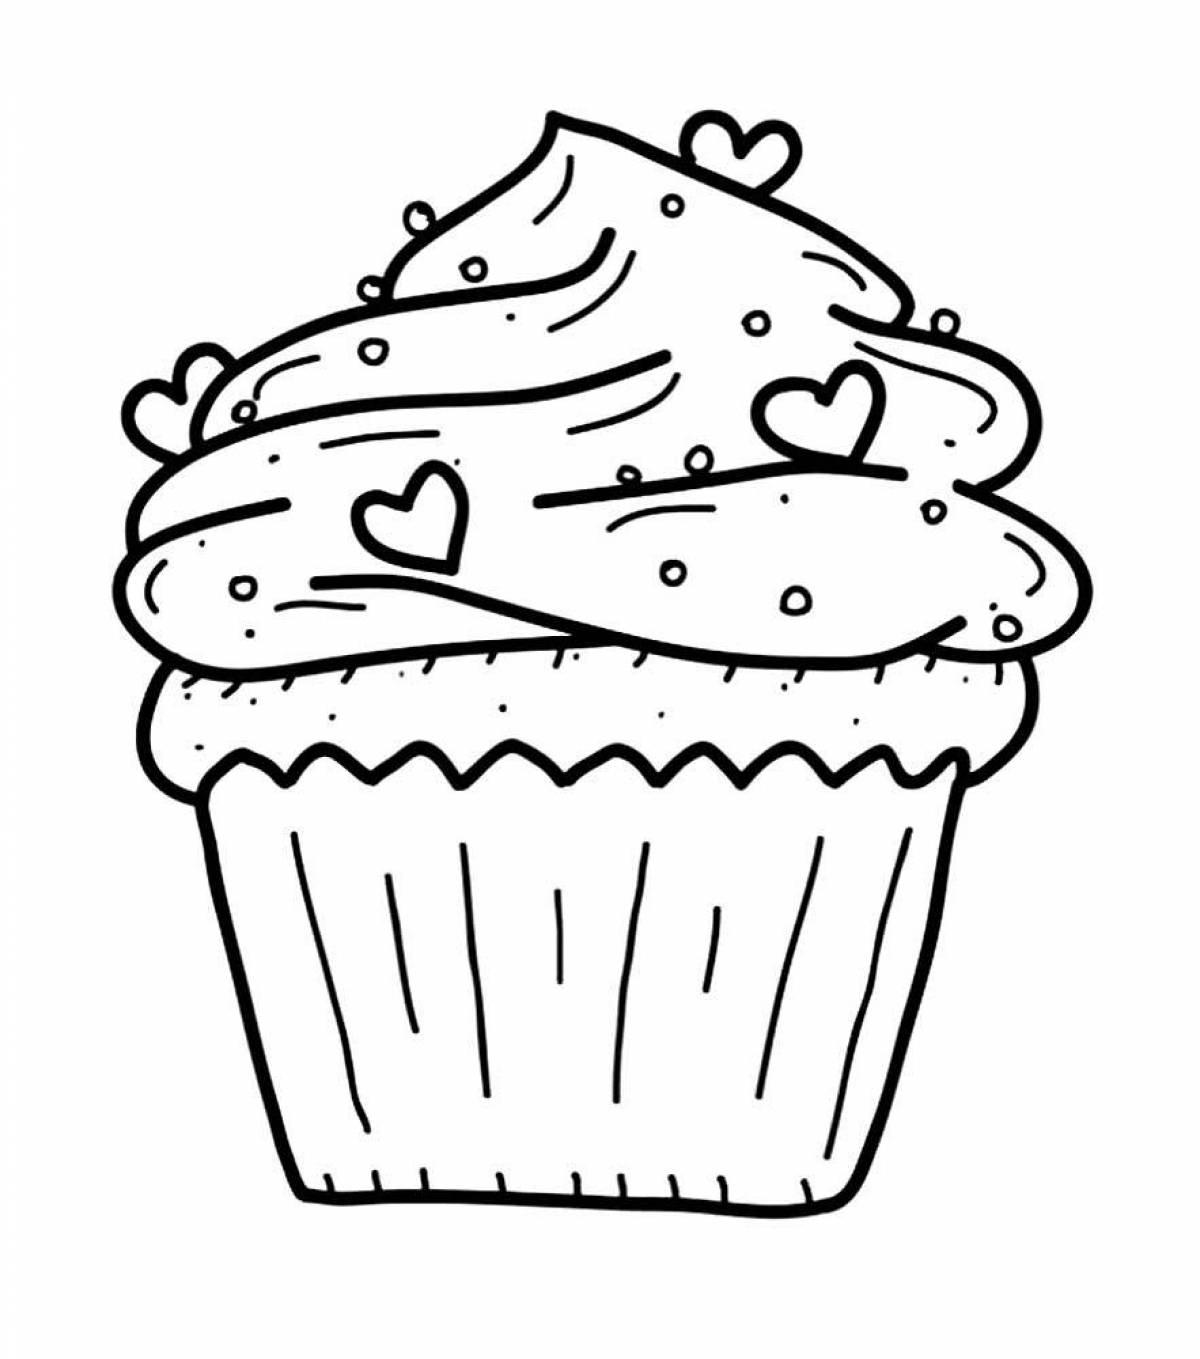 Delicious cupcake coloring page